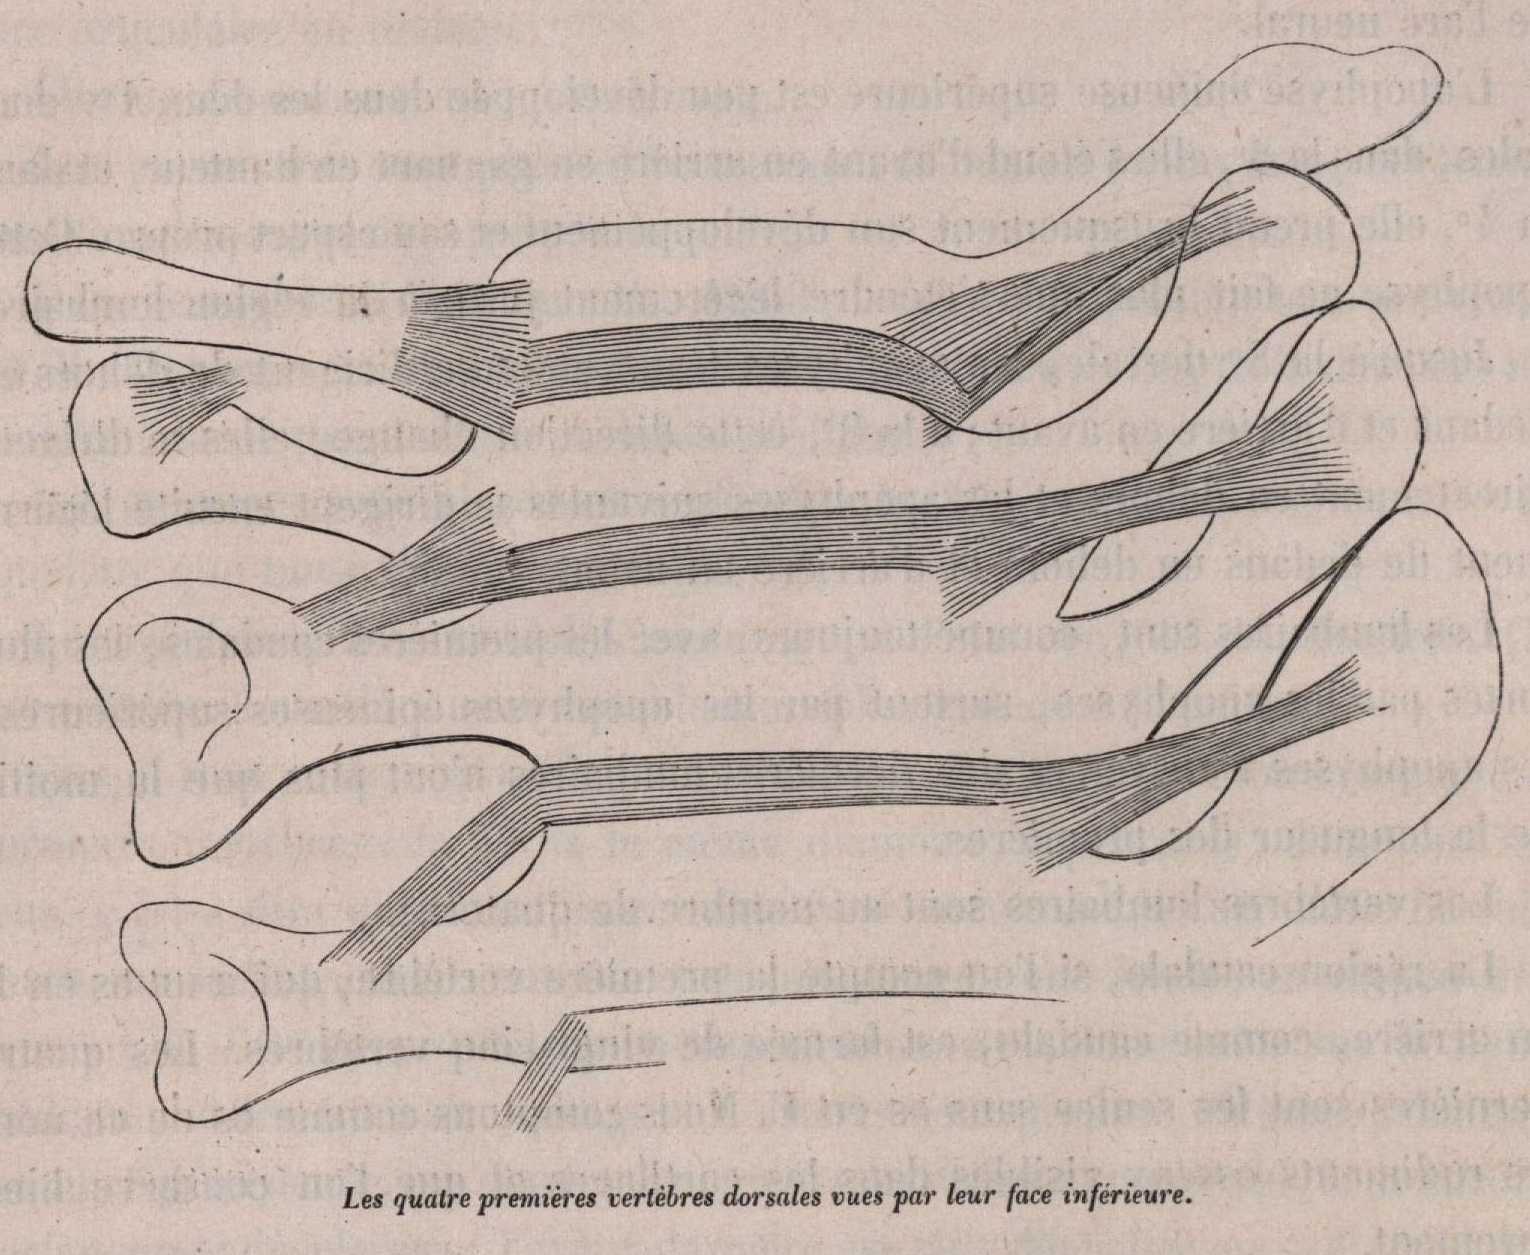 Van Beneden (1870, fig. 09)